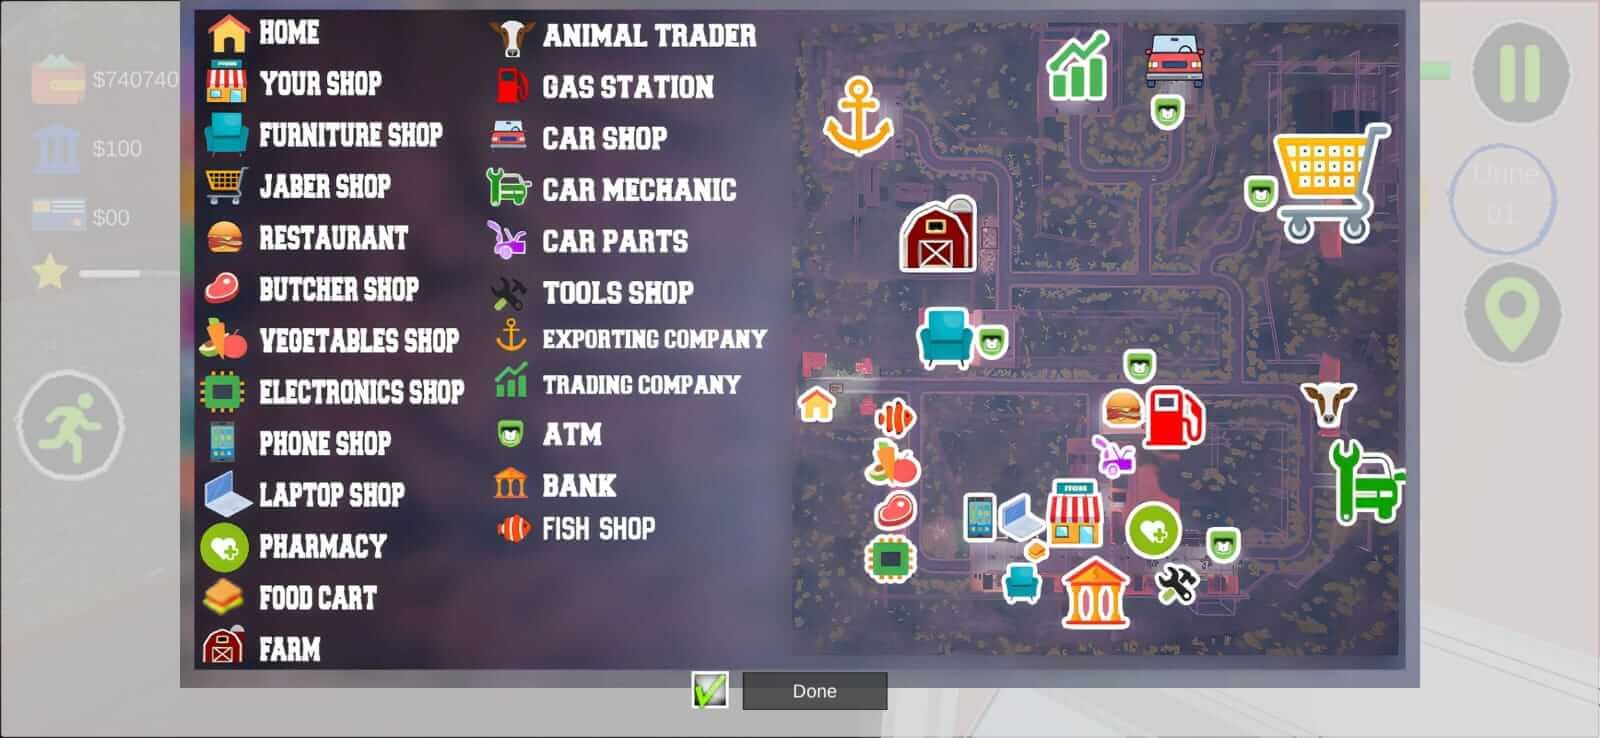 Última Versão de Trader Life Simulator 2.0.17 para Android